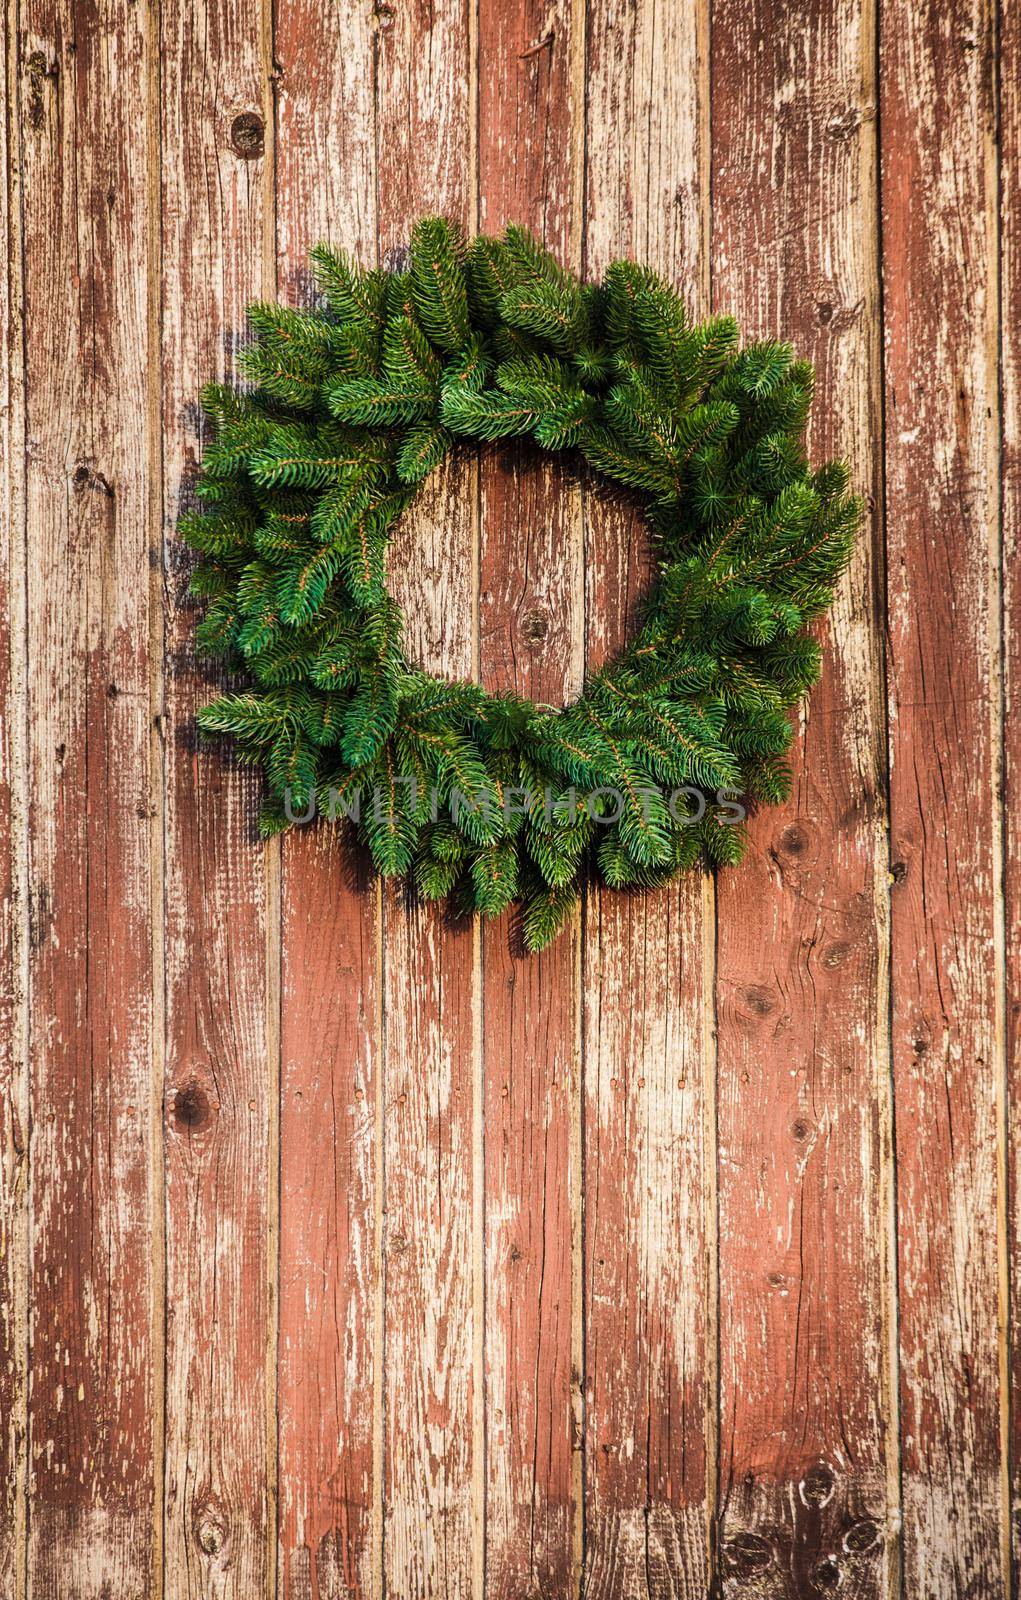 Christmas wreath by oksix